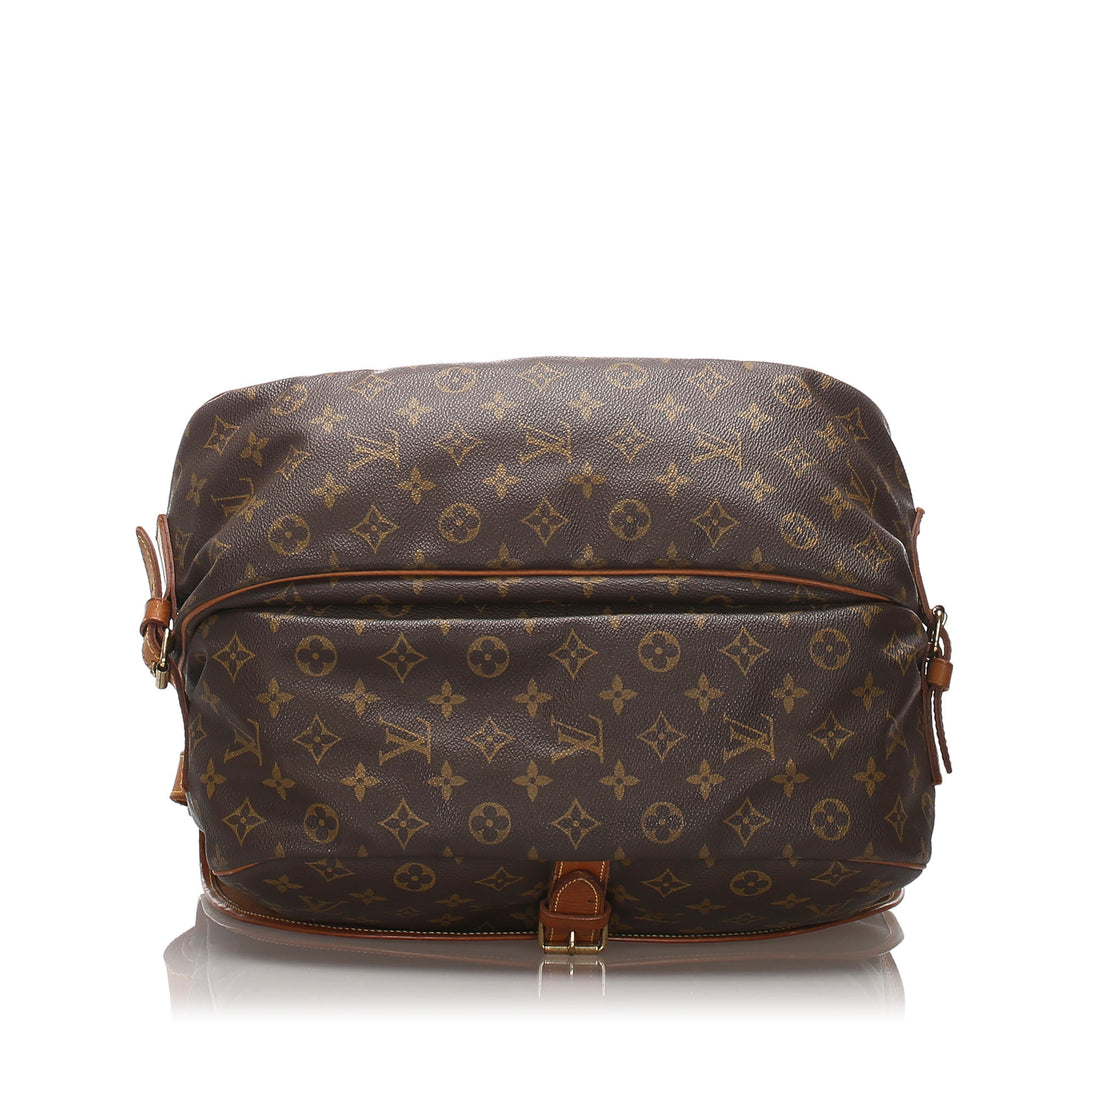 Louis Vuitton Satchel - 39 For Sale on 1stDibs  louis vuitton satchel purse,  lv satchel bag, louis vuitton satchels